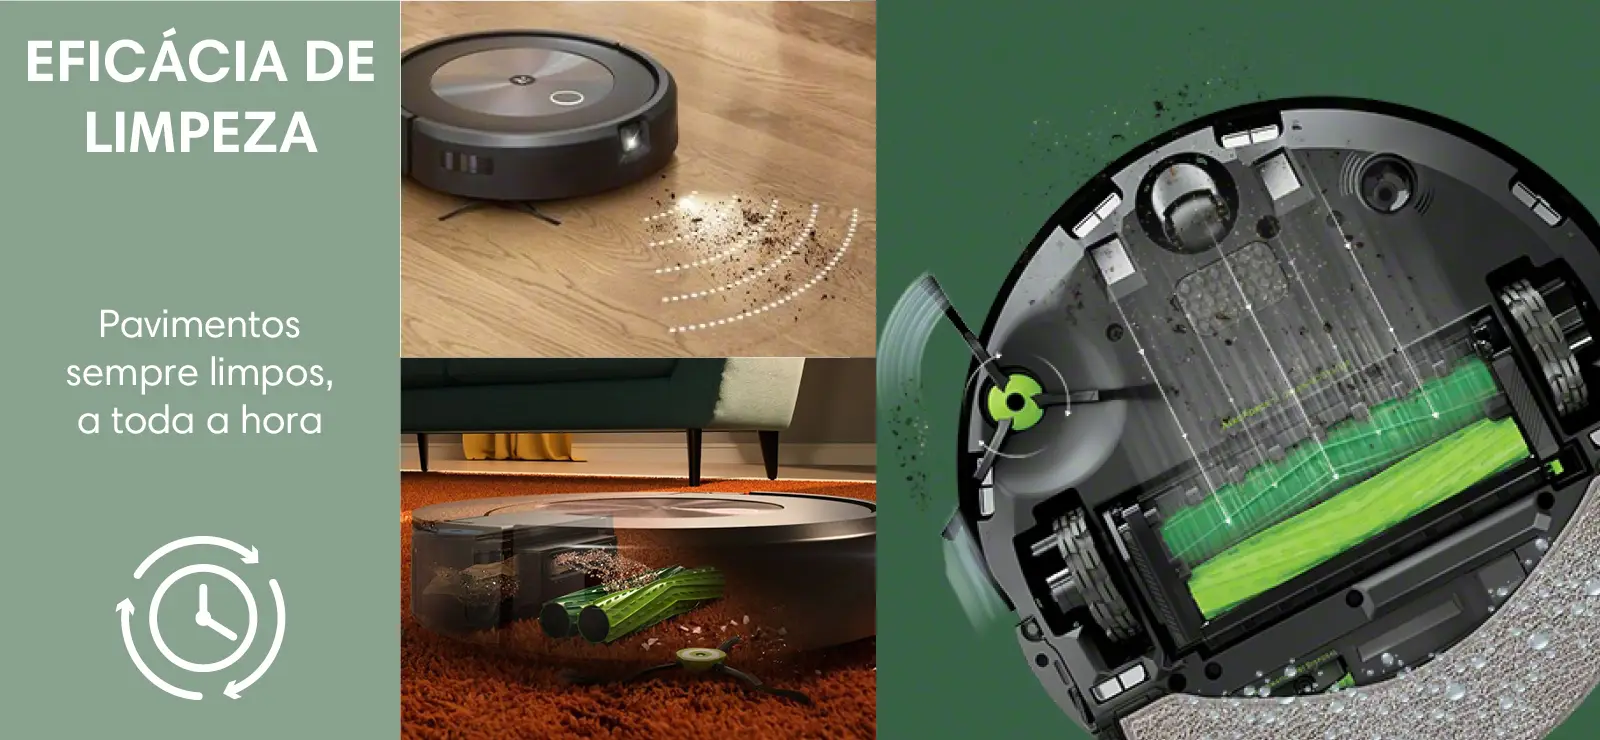 Vale la pena un Robot Aspiradora? (iRobot Roomba i3) 